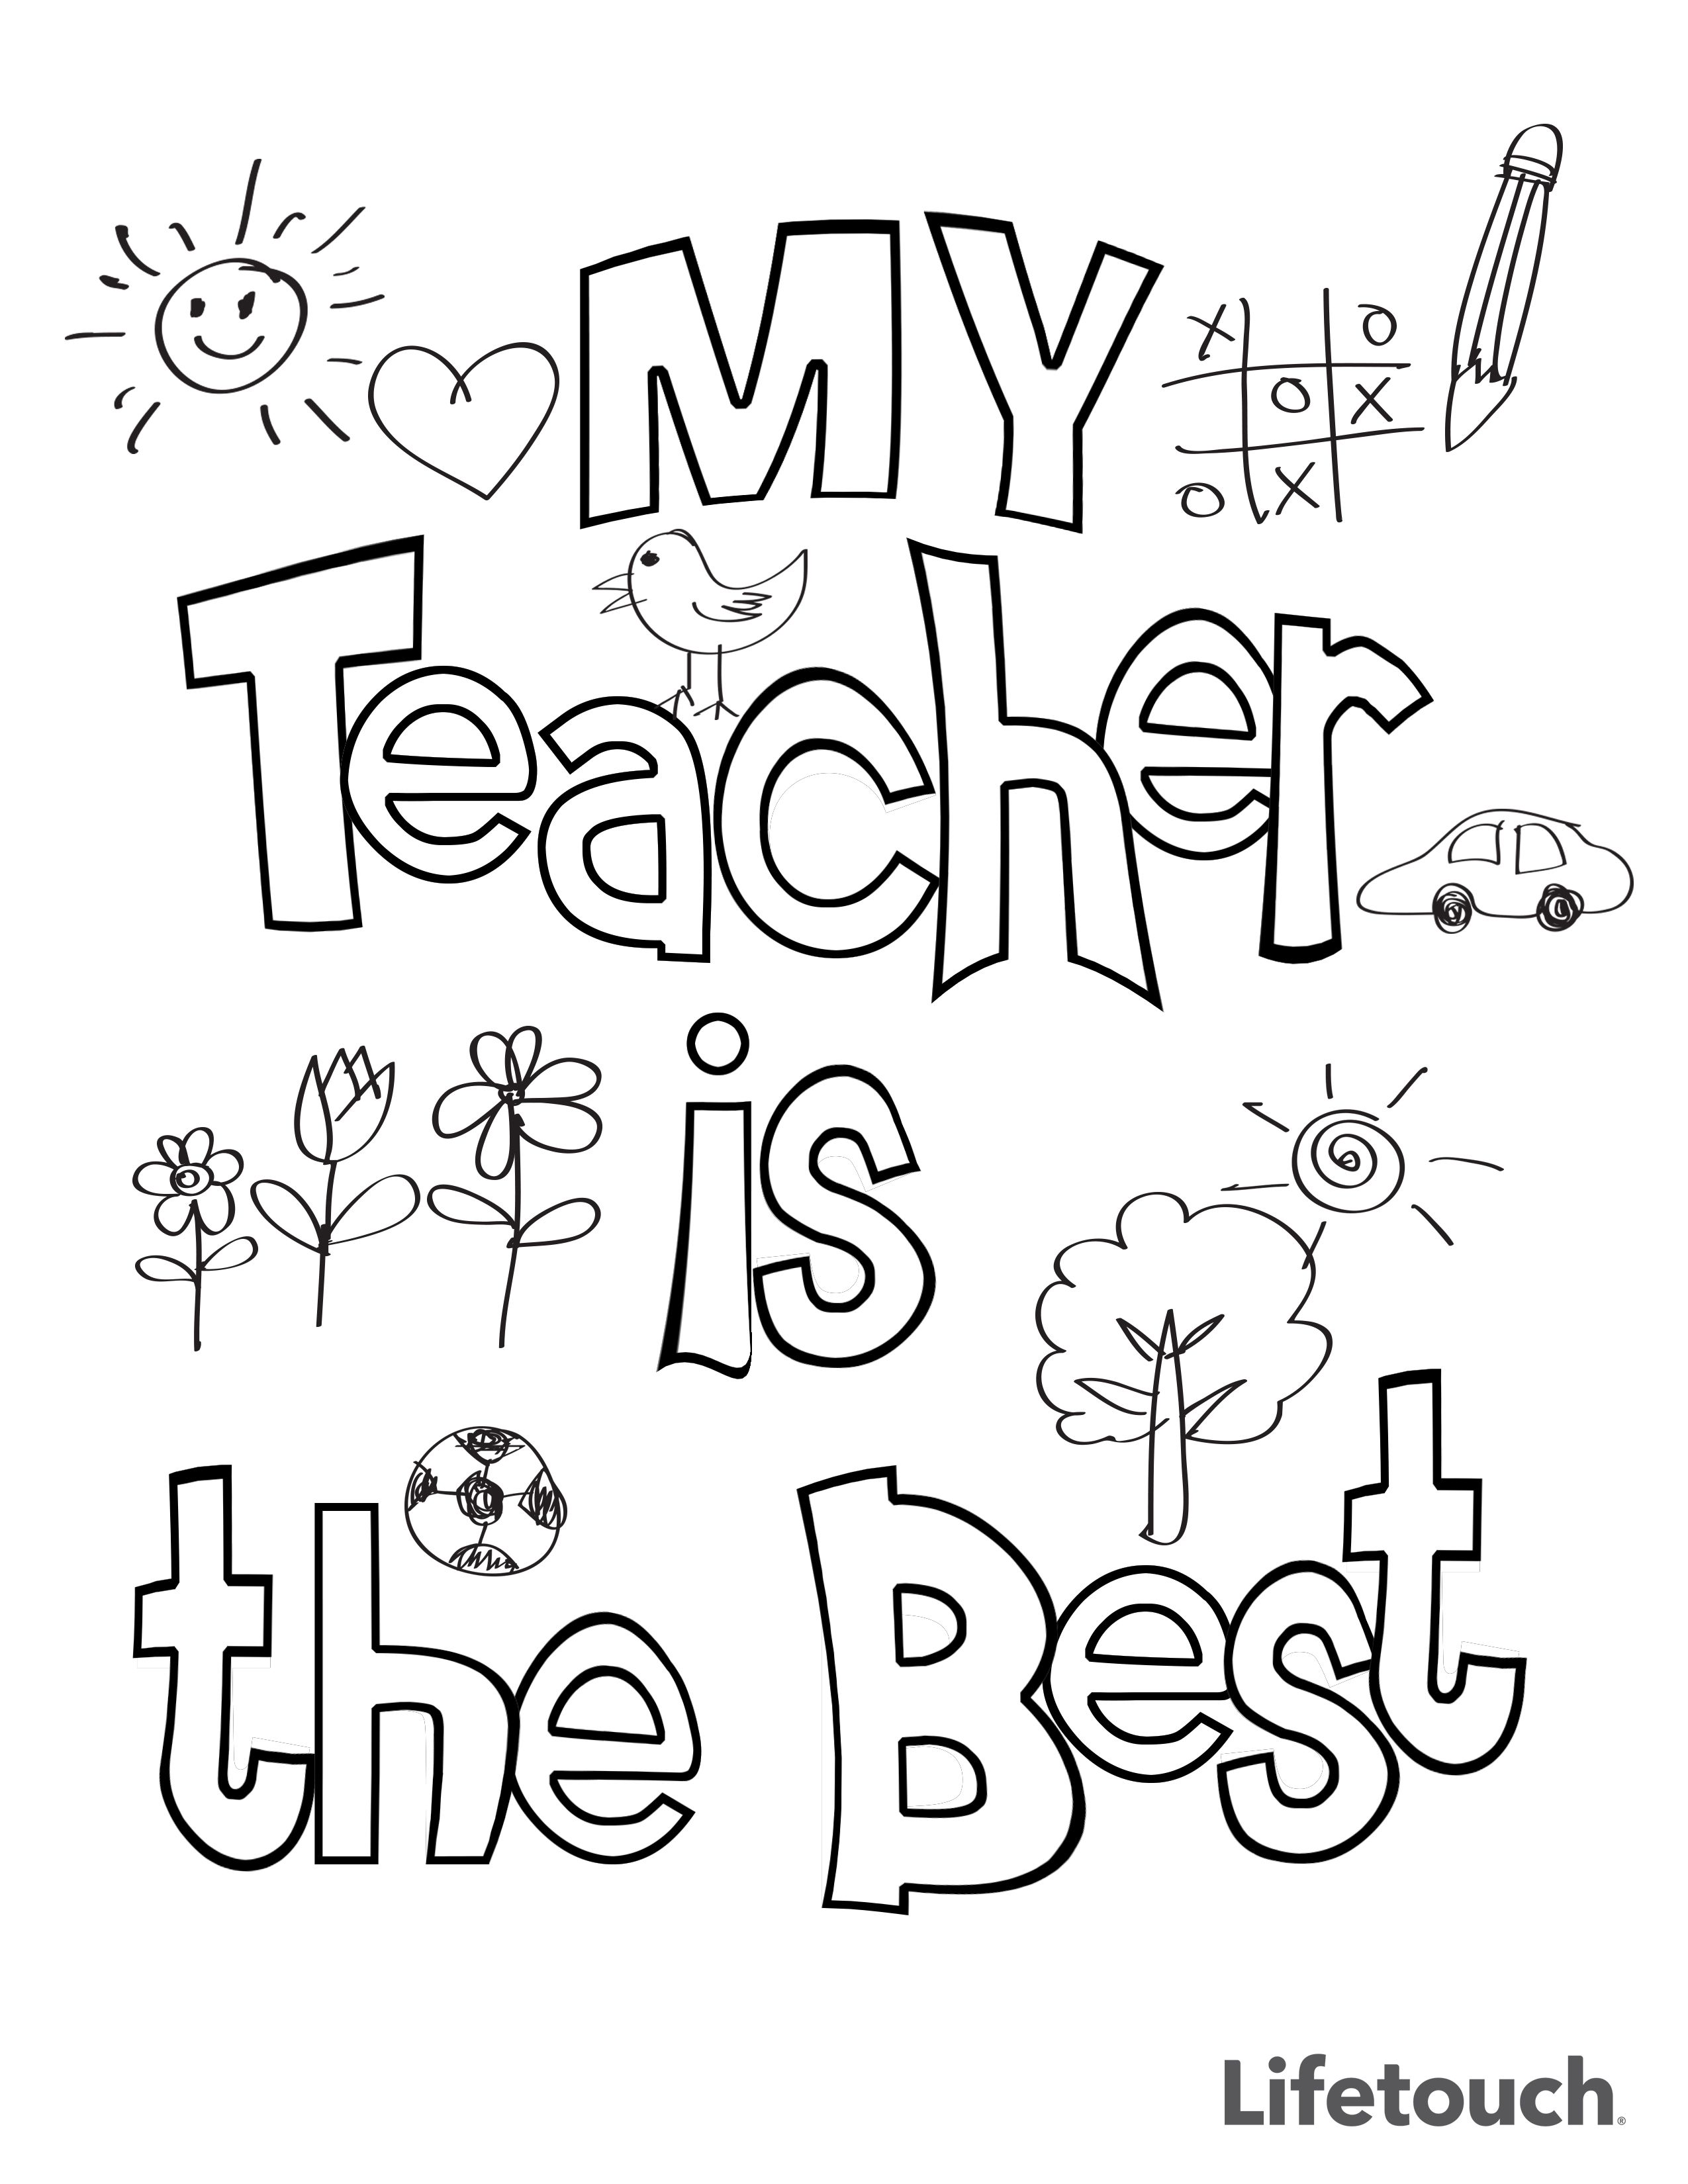 Teacher Appreciation Coloring Sheet | Teacher appreciation week printables,  Teachers appreciation week gifts, Teacher appreciation printables